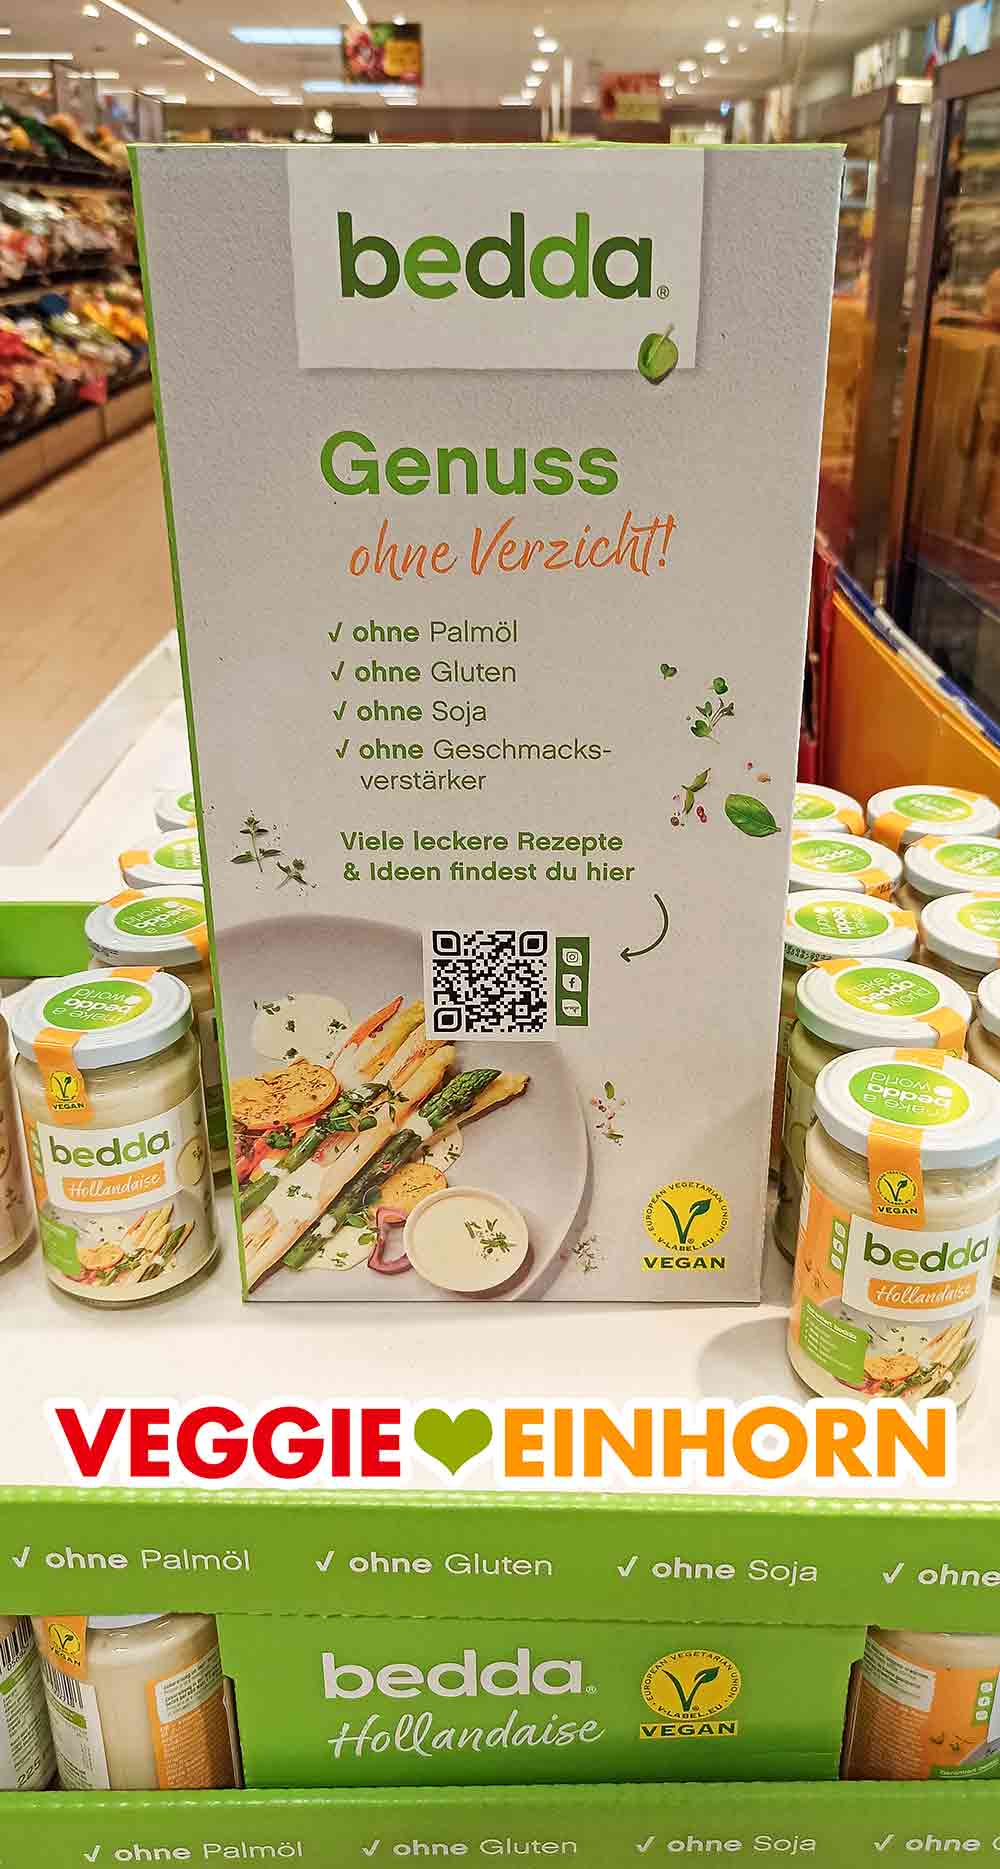 Aufsteller mit veganer Sauce Hollandaise von bedda im Supermarkt